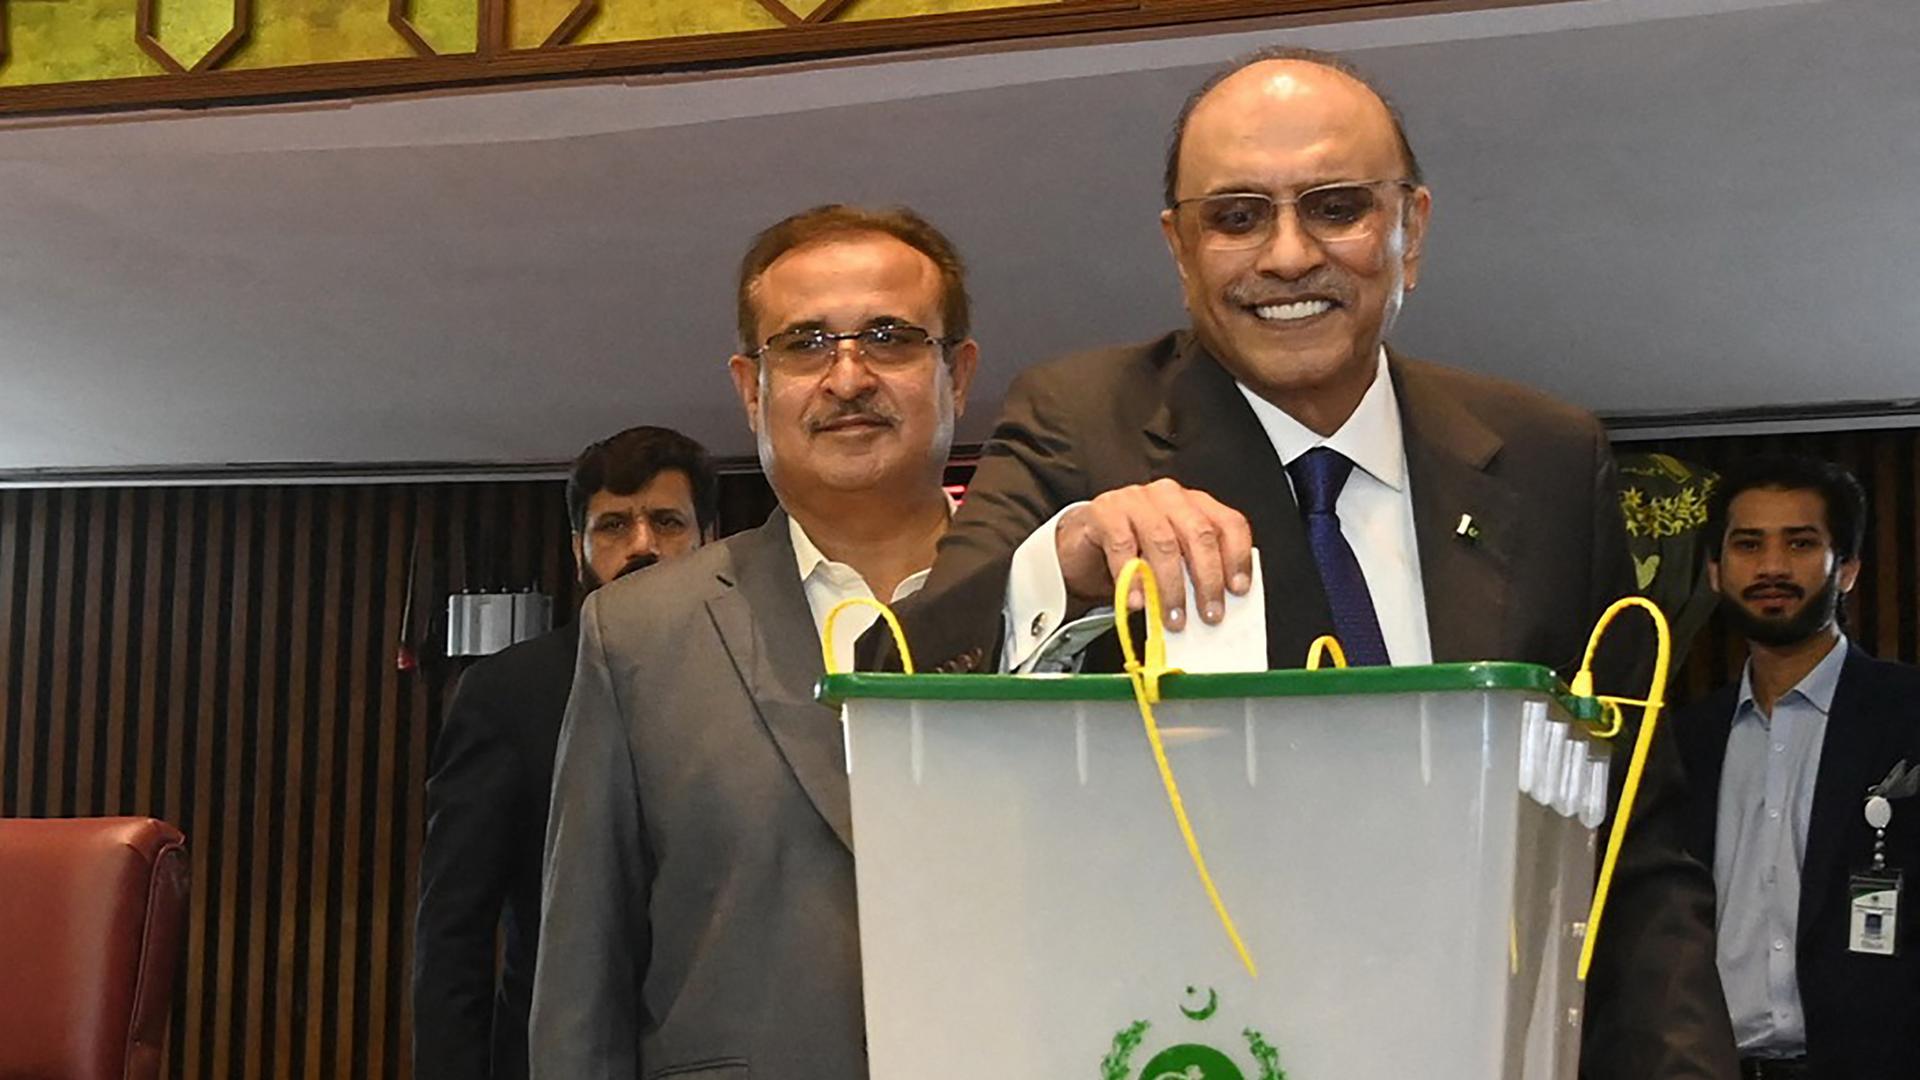 Asif Ali Zardari steckt einen Abstimmungszettel in eine Wahlurne. Er lächelt.